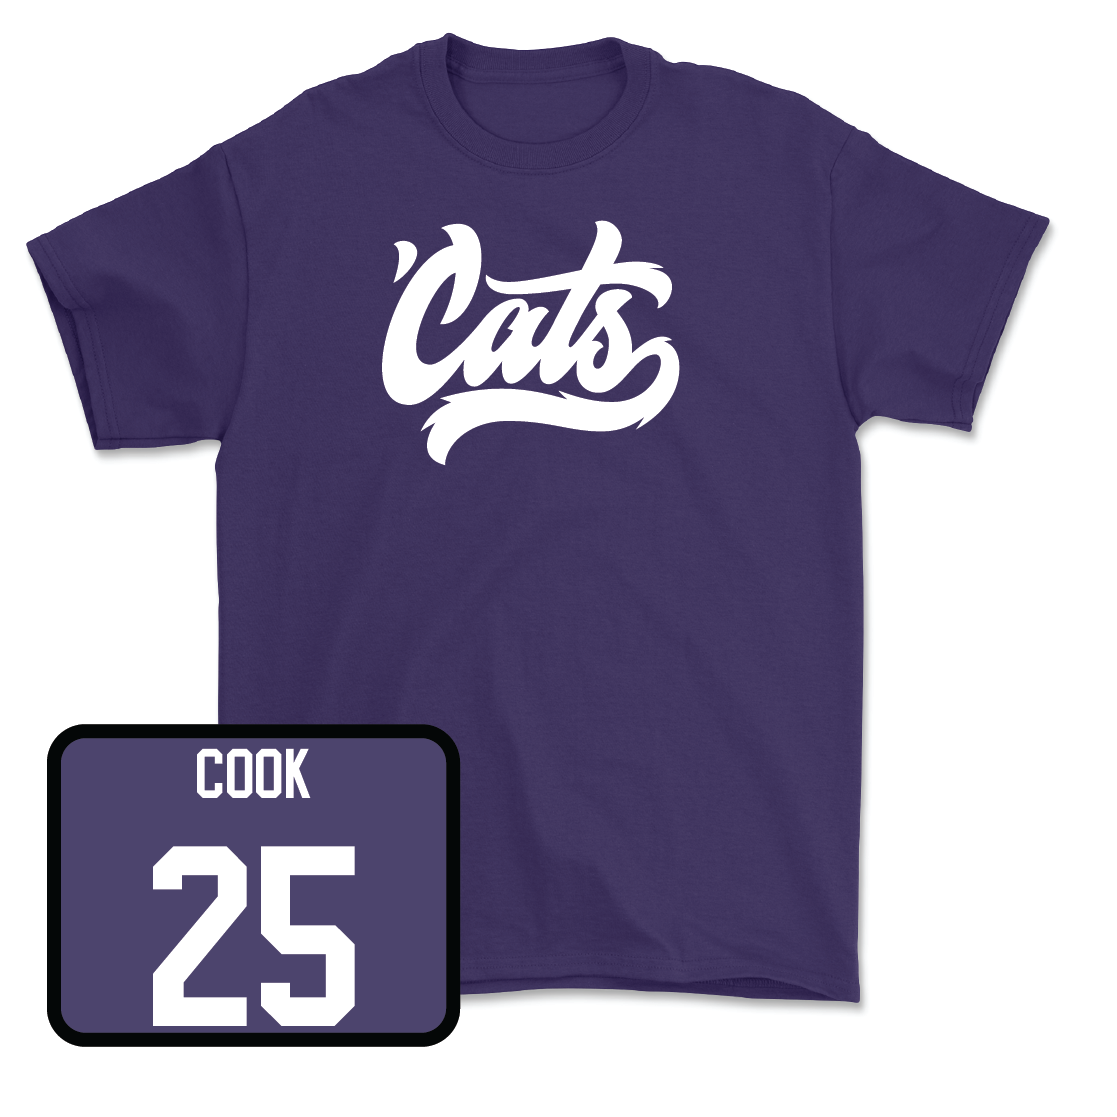 Purple Men's Soccer 'Cats Tee - Gregory Cook